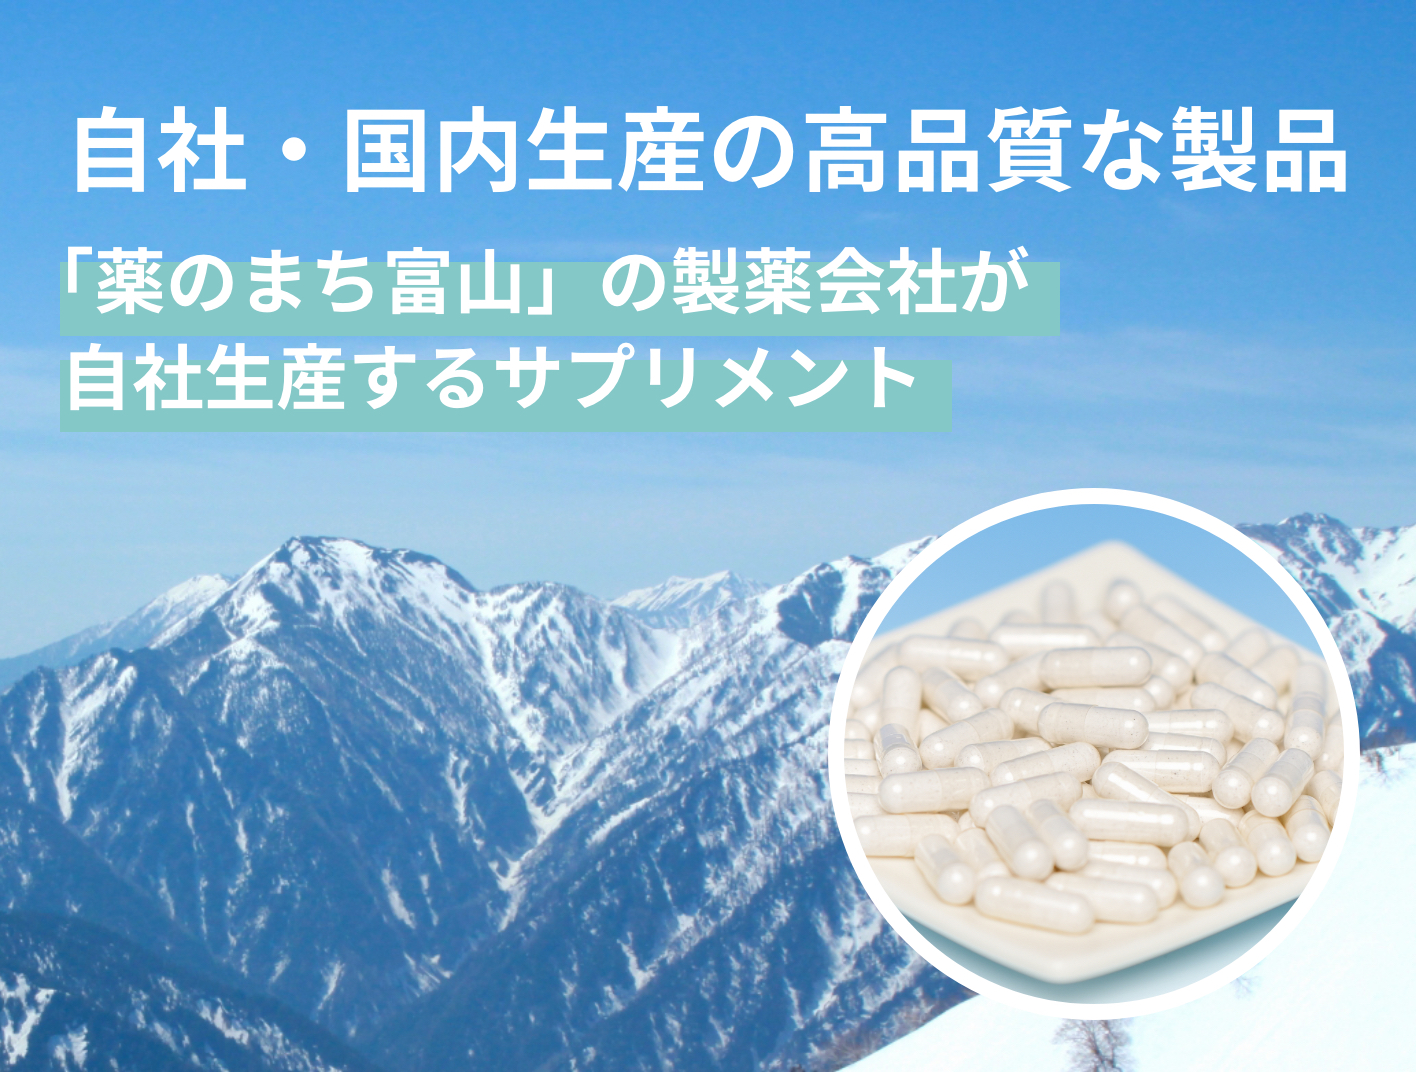 自社・国内生産の高品質な製品「薬のまち富山」の製薬会社が自社生産するサプリメント